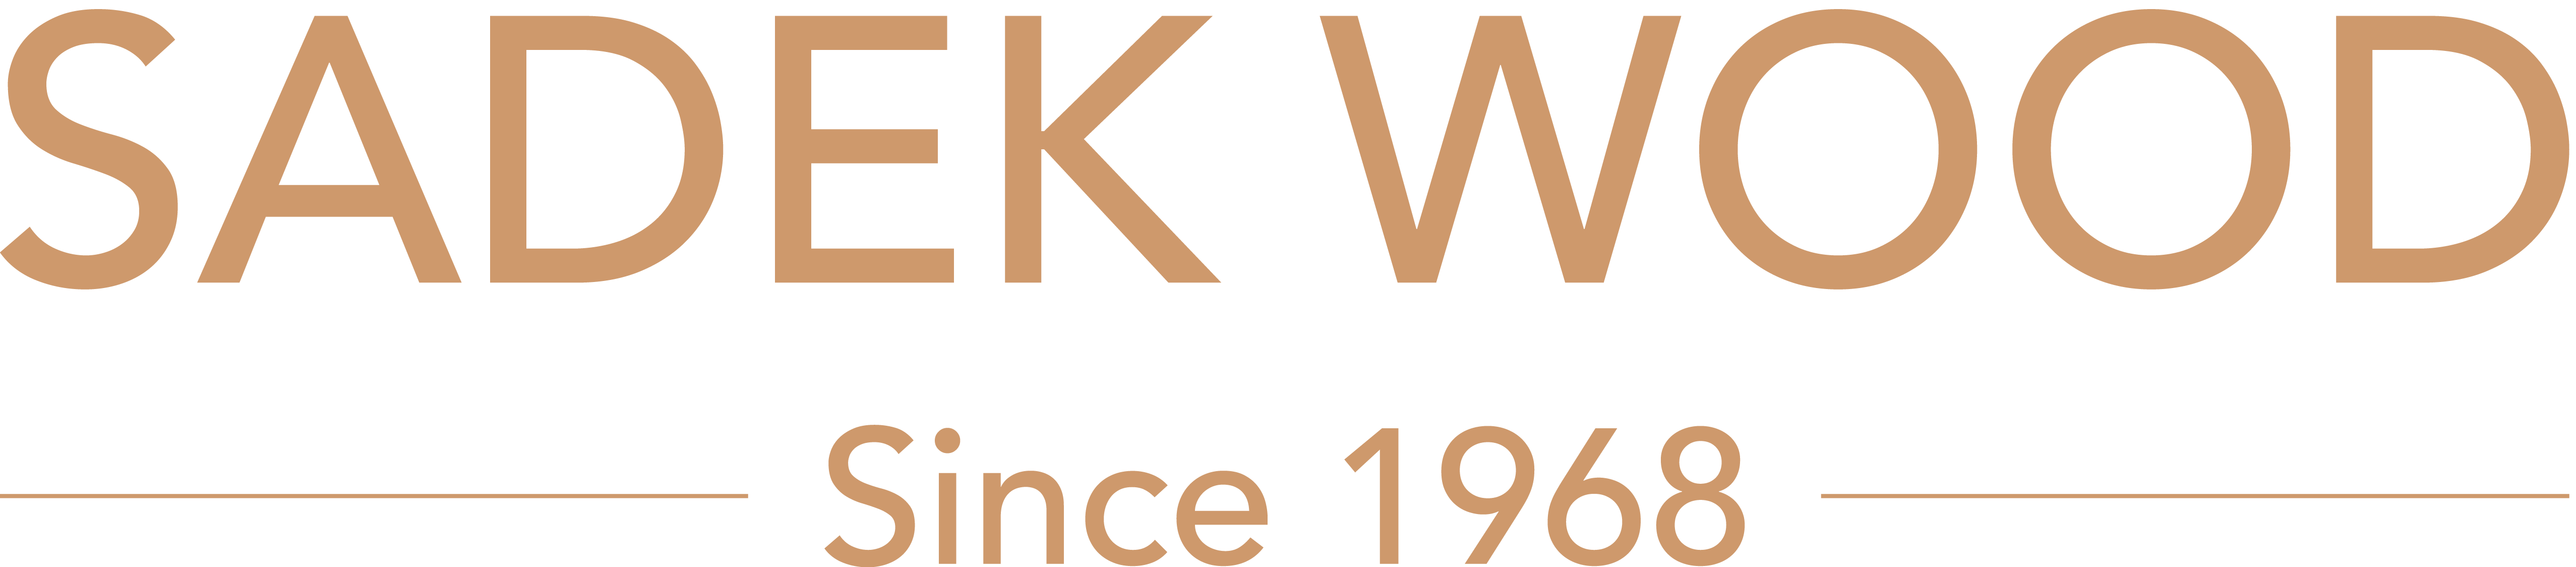 Sadek Wood Logo